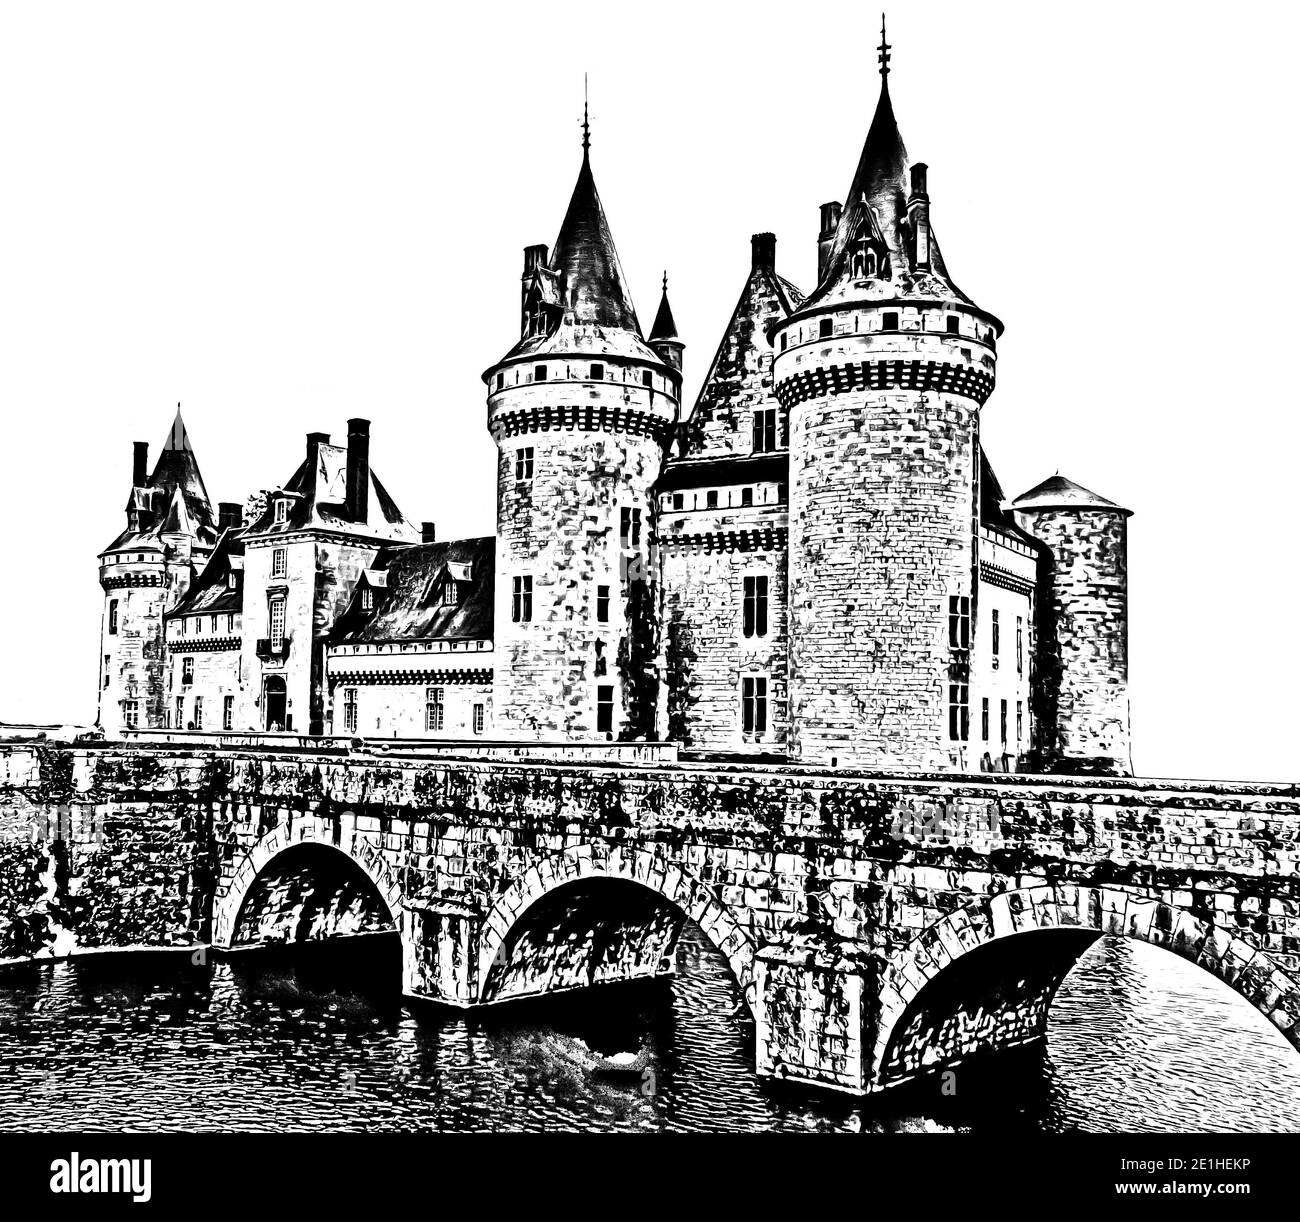 Old medieval castle сhateau de Sully sur Loire. Loire Valley, France. Black white sketch. Pencil style illustration. Stock Photo